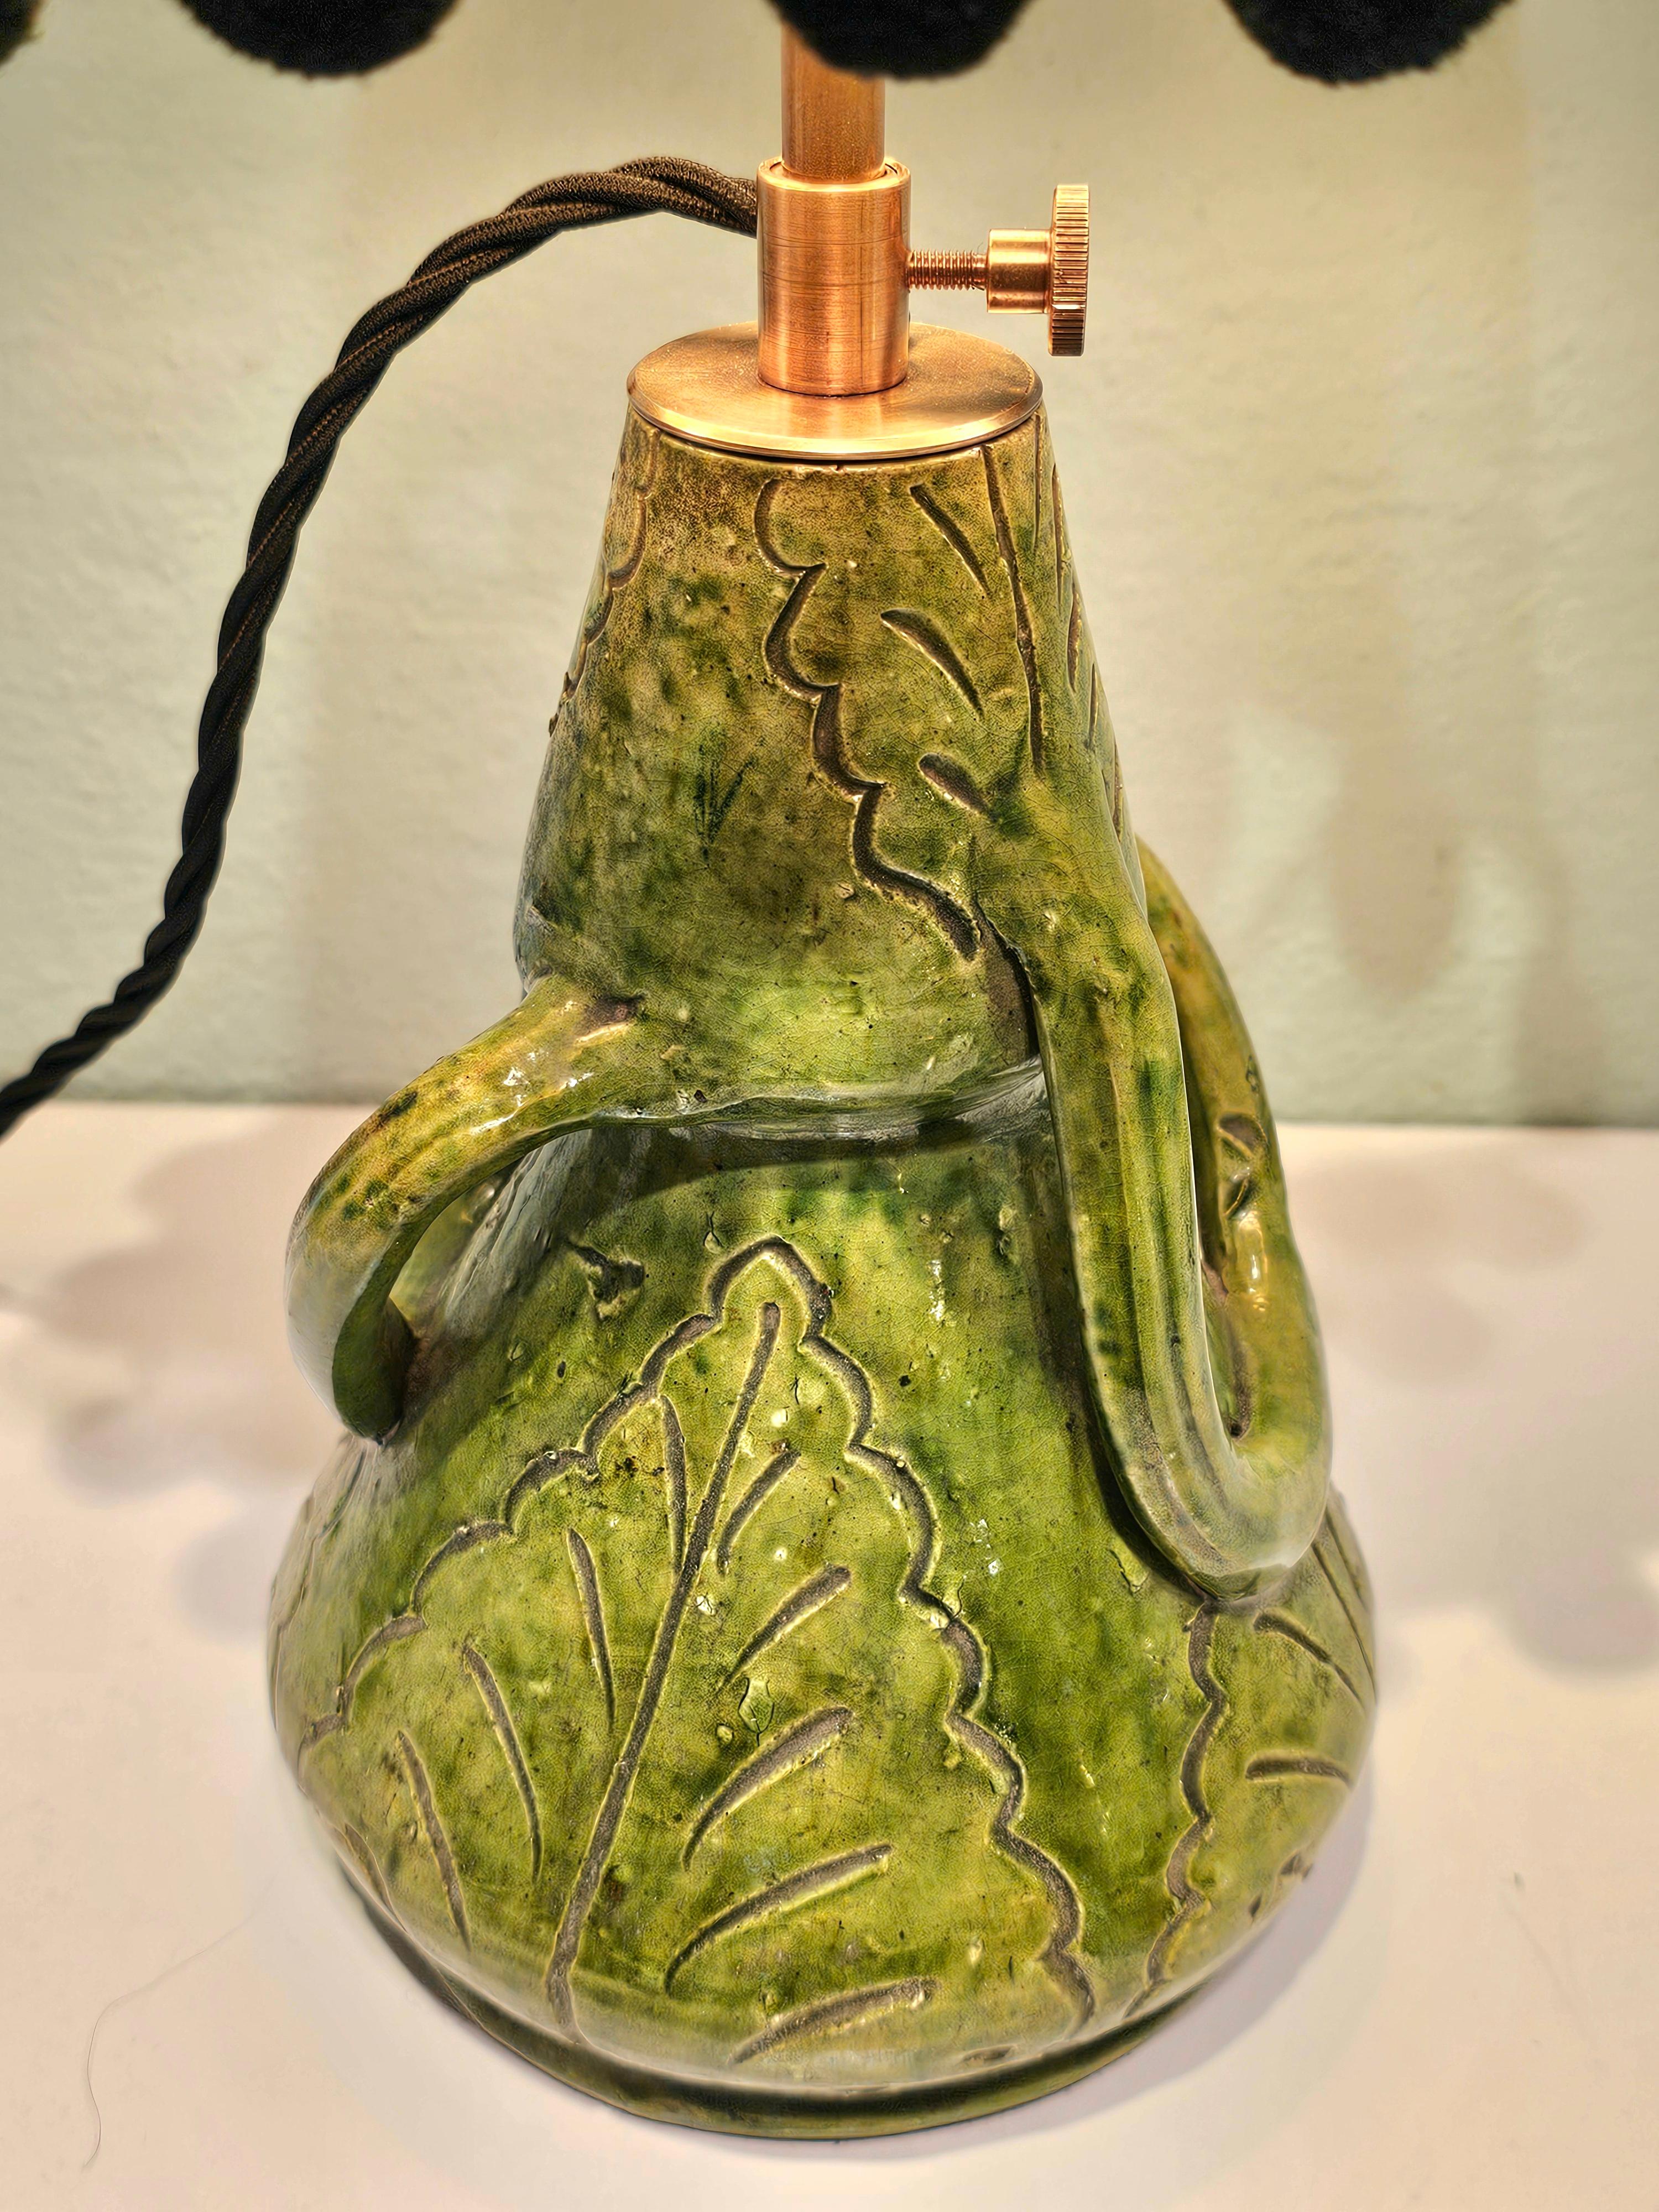 Petite lampe de table transformée à partir d'une poterie belge verte émaillée de Brendens Aardewerk.
Avec un abat-jour fait main en tissu avec pompon noir. Intérieur doré.
La hauteur est réglable